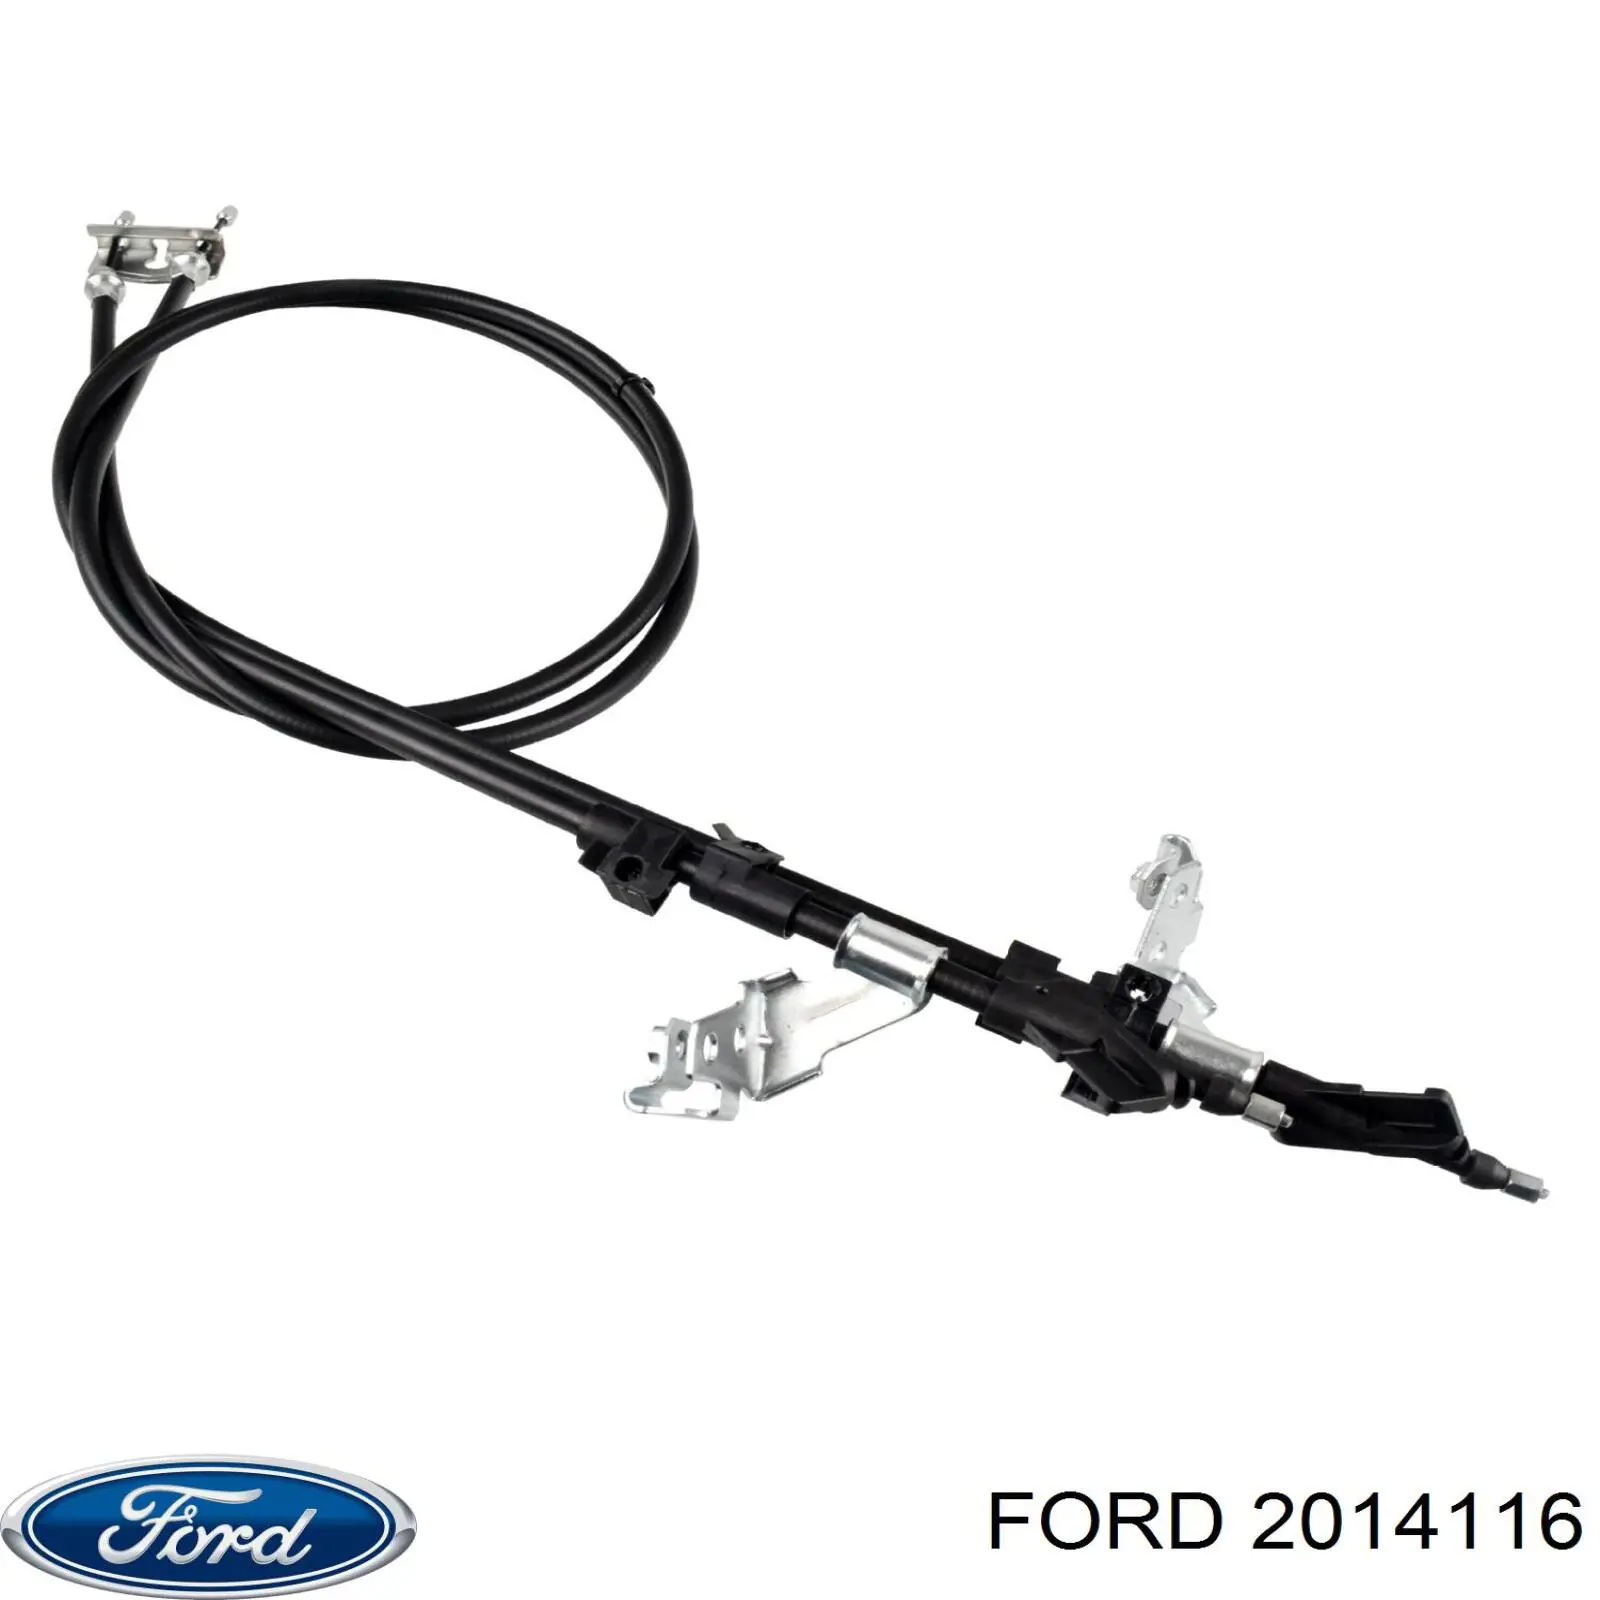 2014116 Ford трос ручного тормоза задний правый/левый